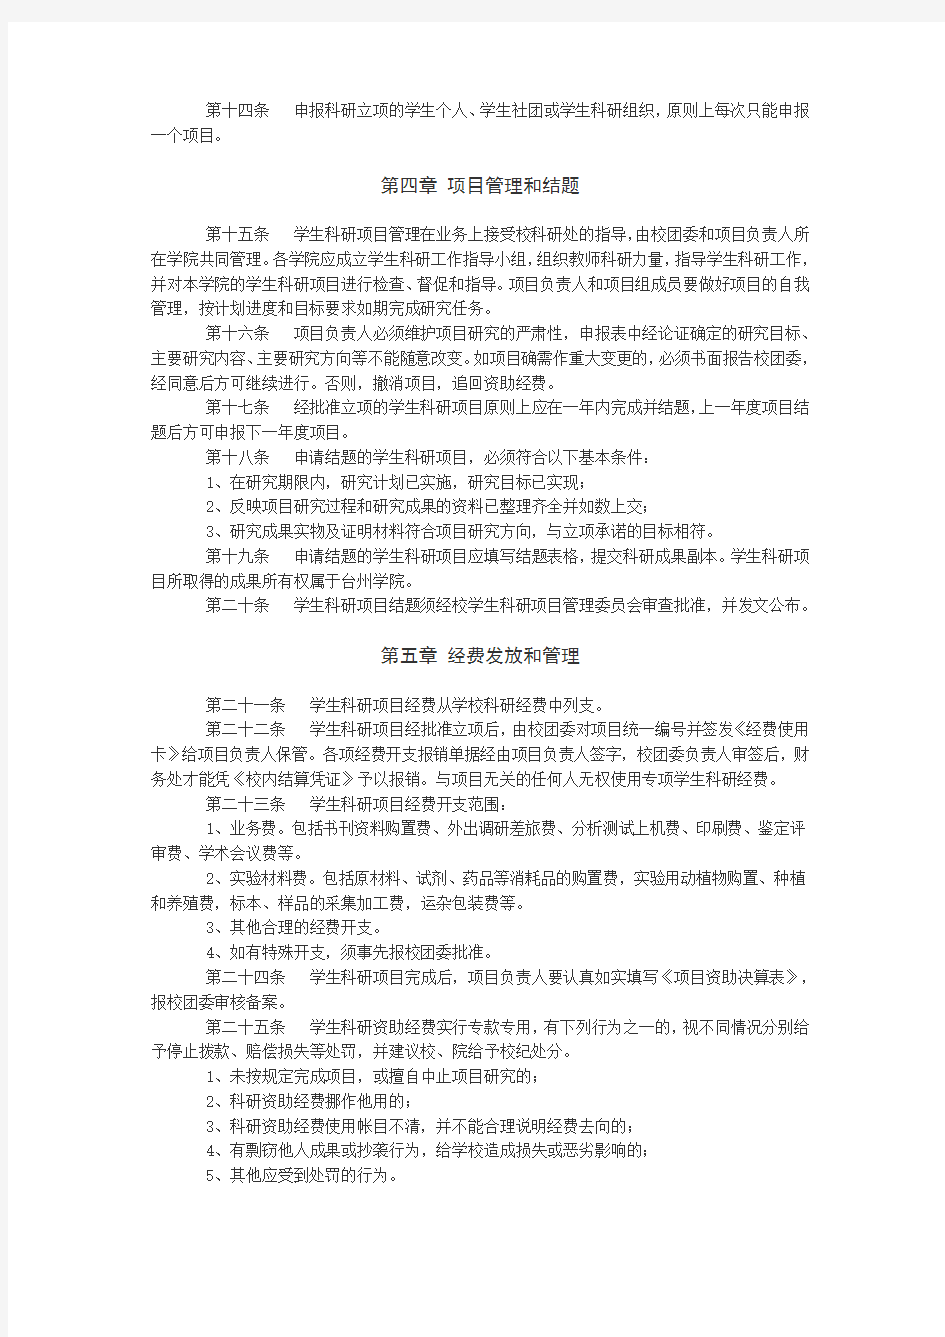 台州学院学生科研项目管理办法试行